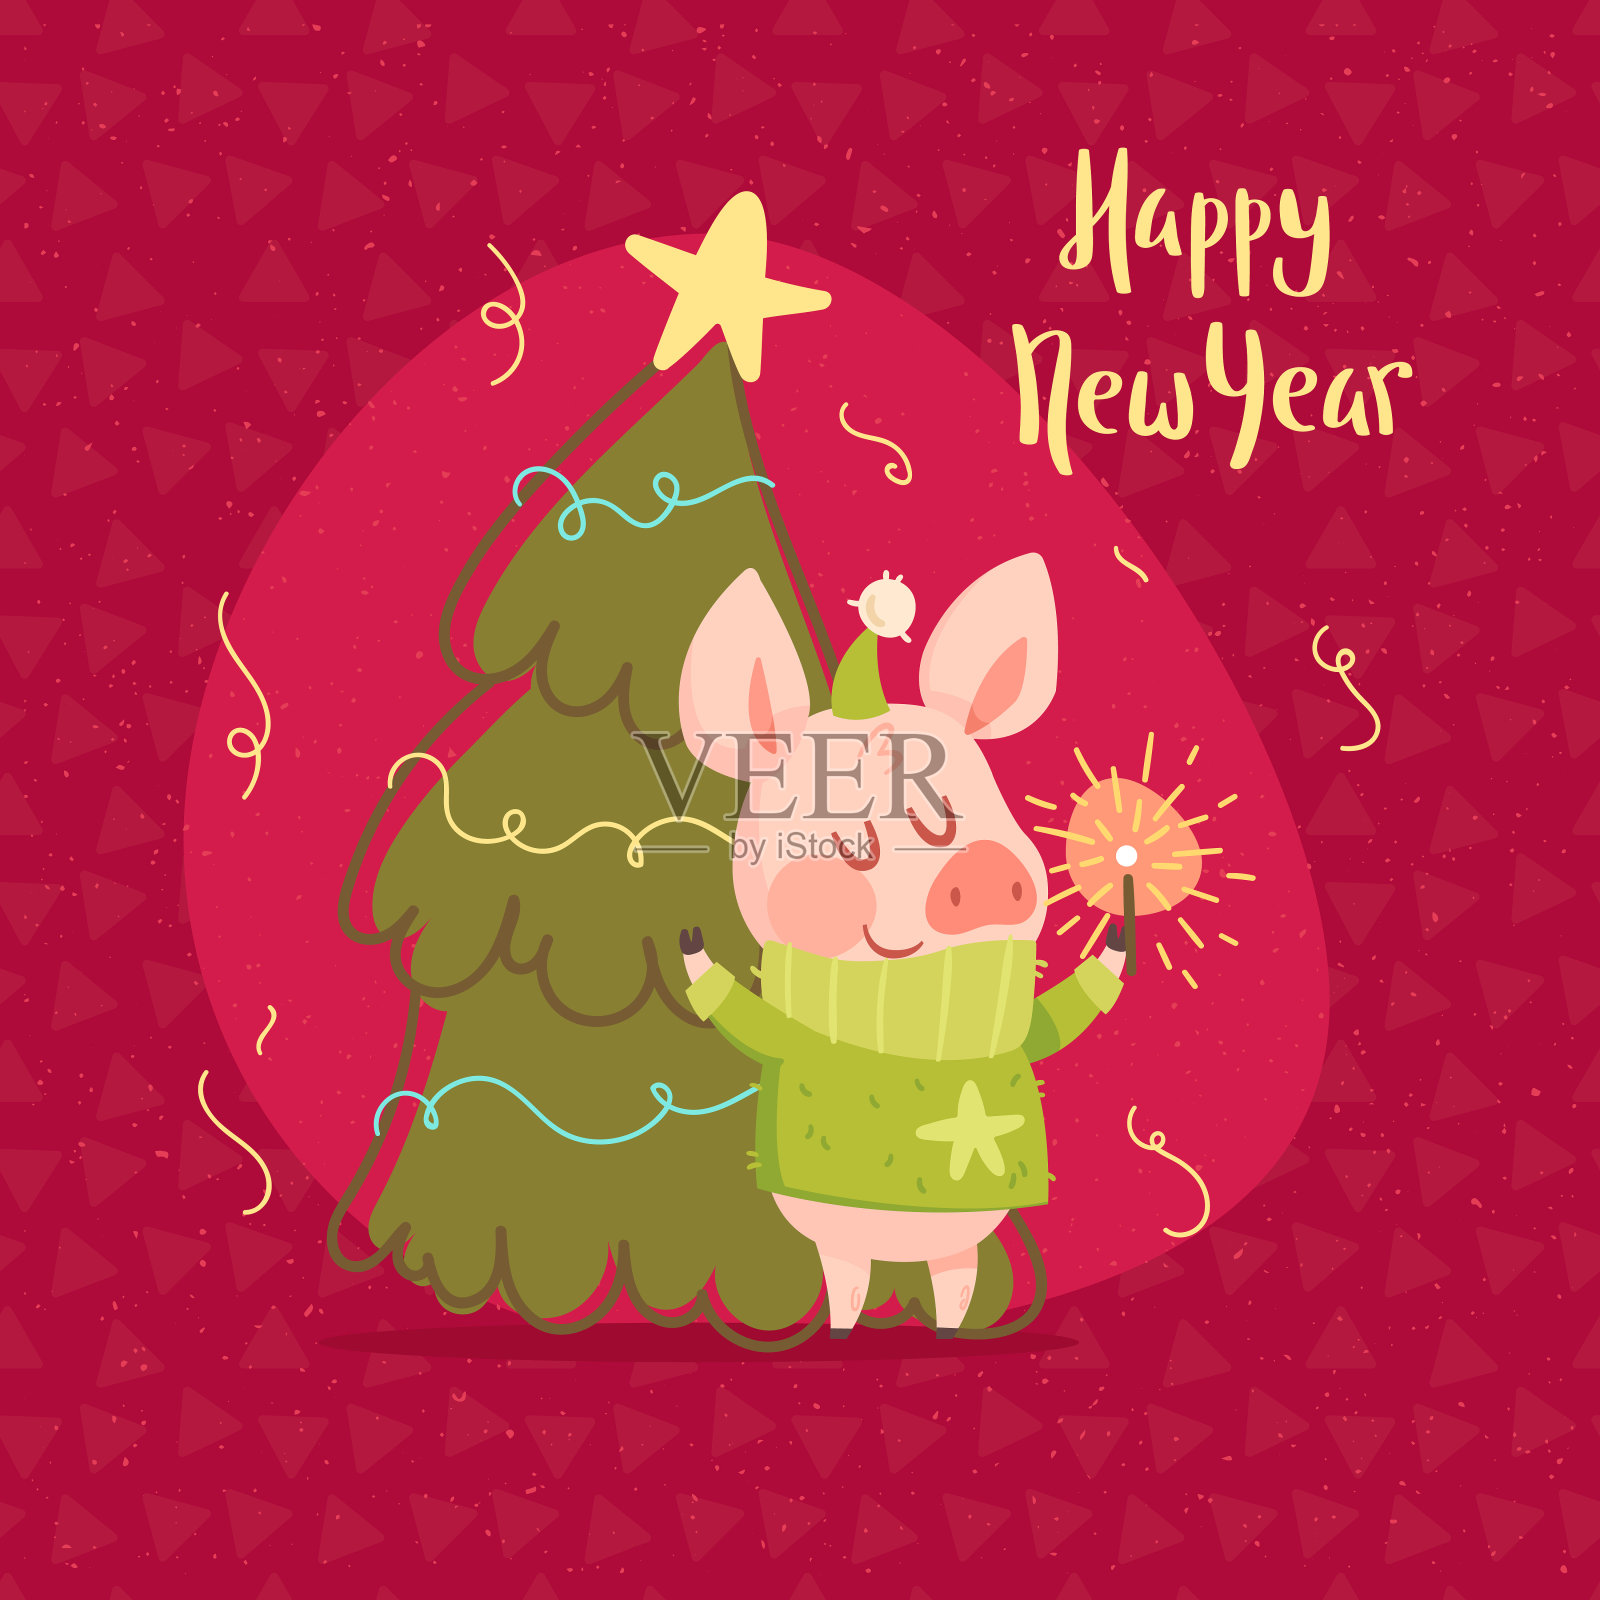 可爱小猪和圣诞树的贺年卡设计模板素材